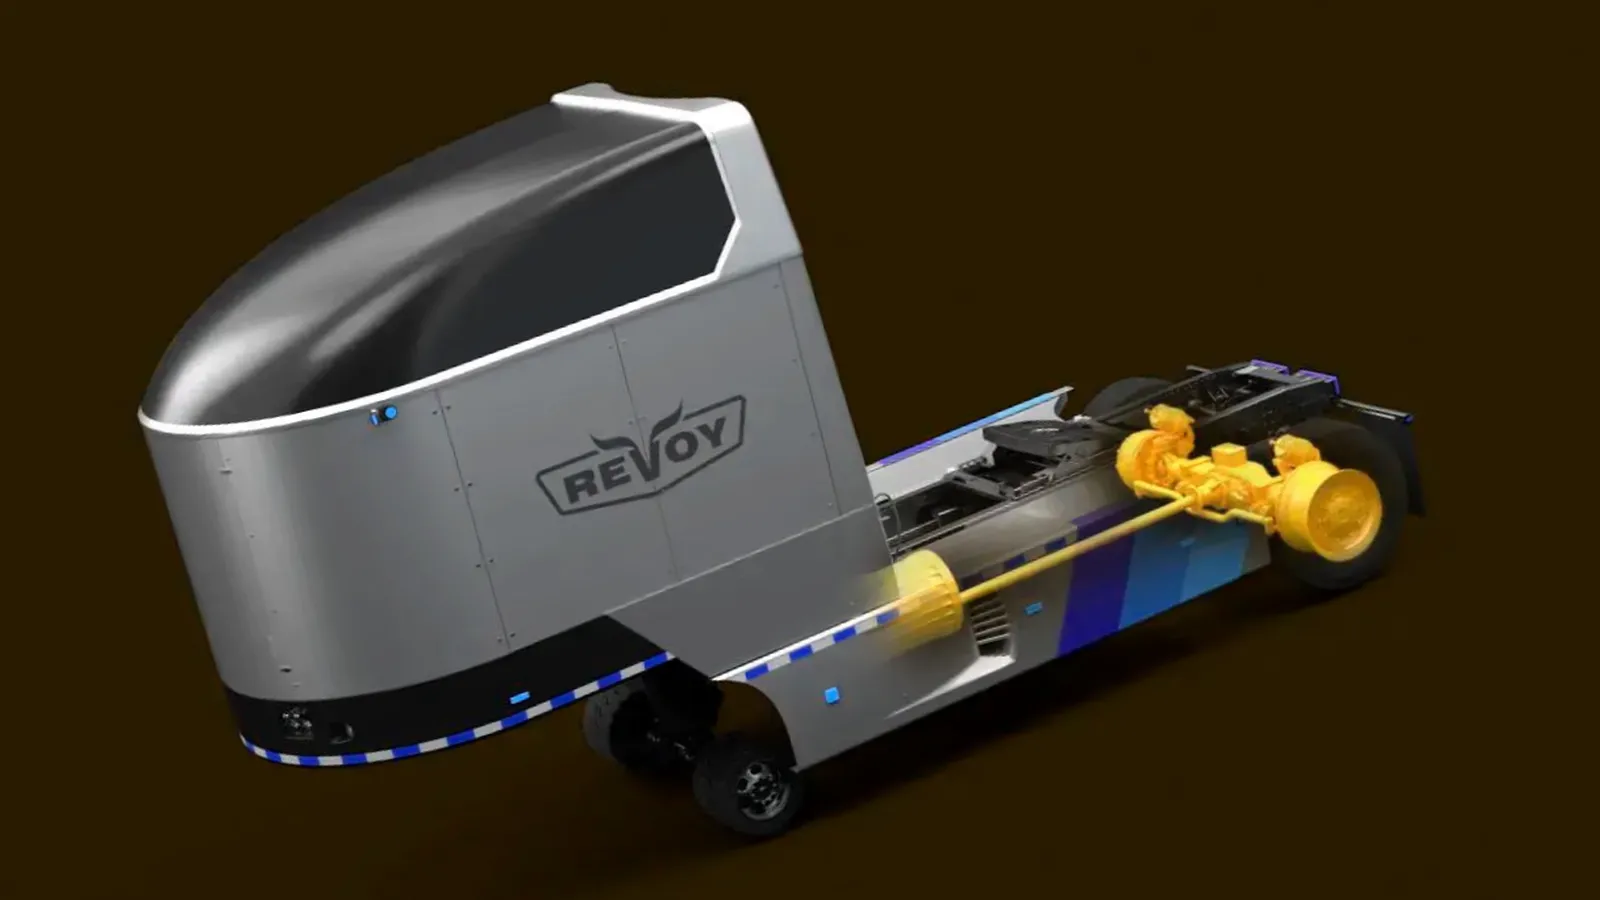 Revoy, Startup mobil listrik, Tawarkan Modul Penambah Jarak untuk Armada Truk - the picture via: motortrend - pibitek.biz - User